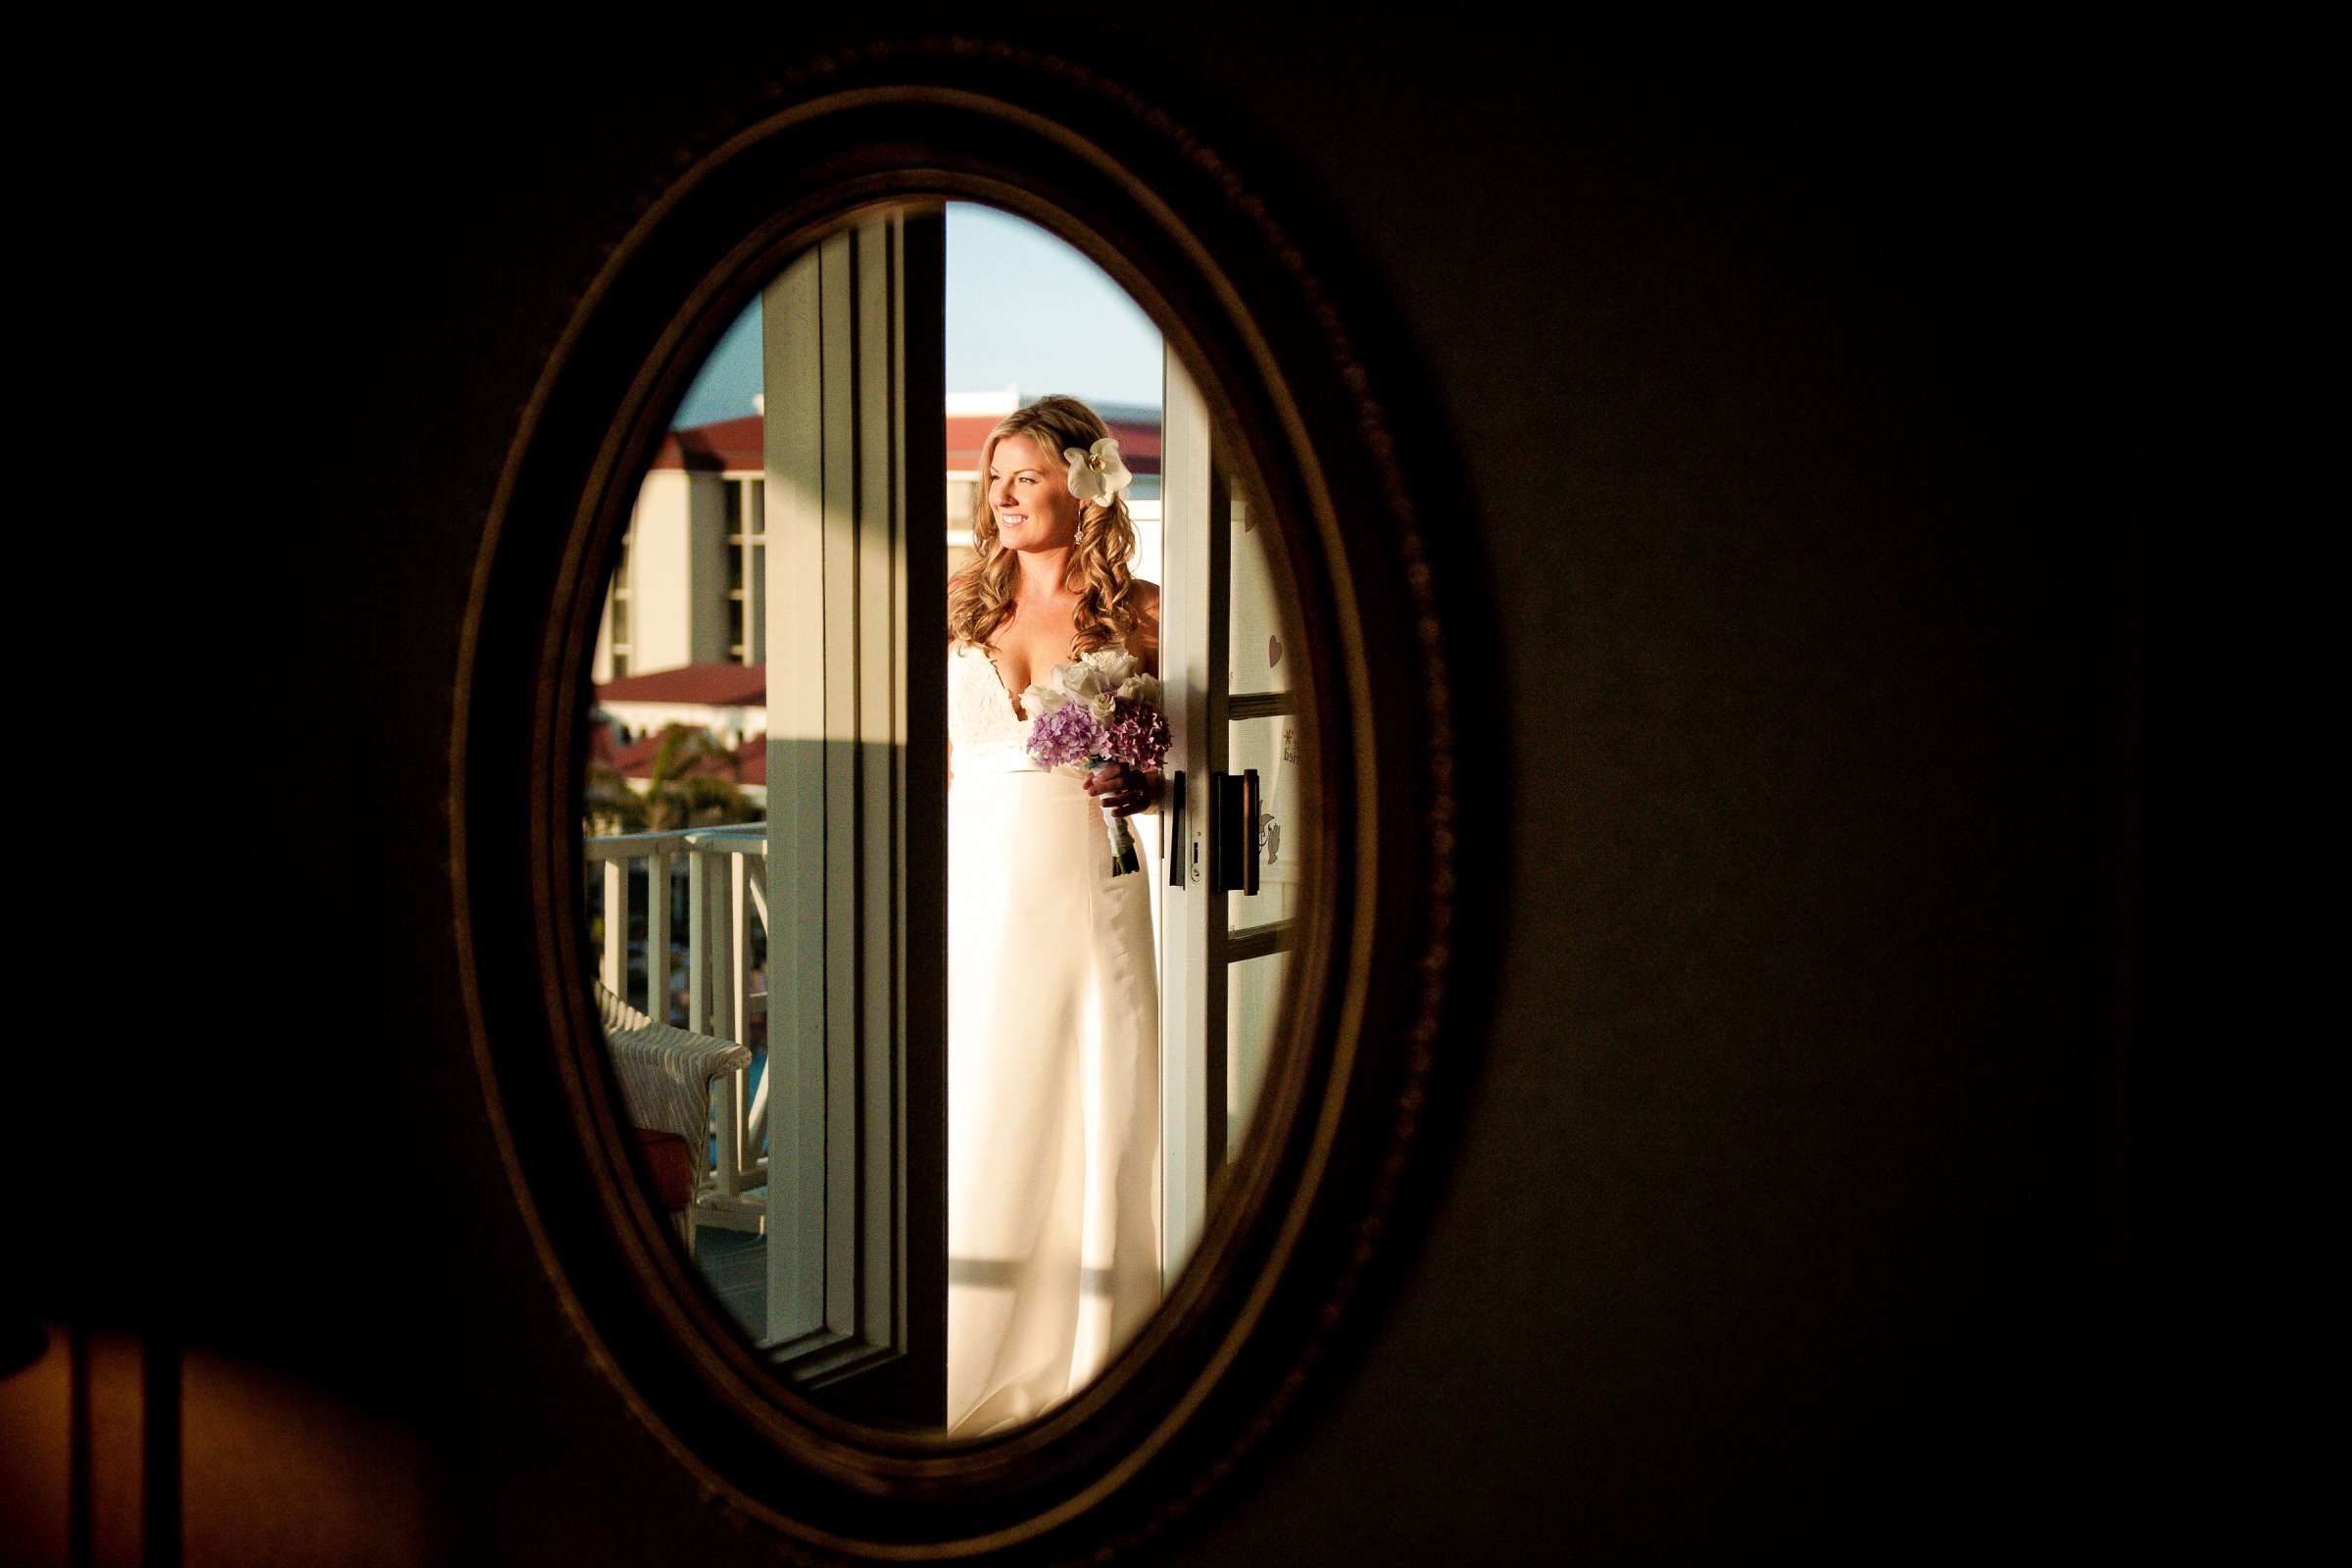 Hotel Del Coronado Wedding, Dawn and Steve Wedding Photo #218659 by True Photography